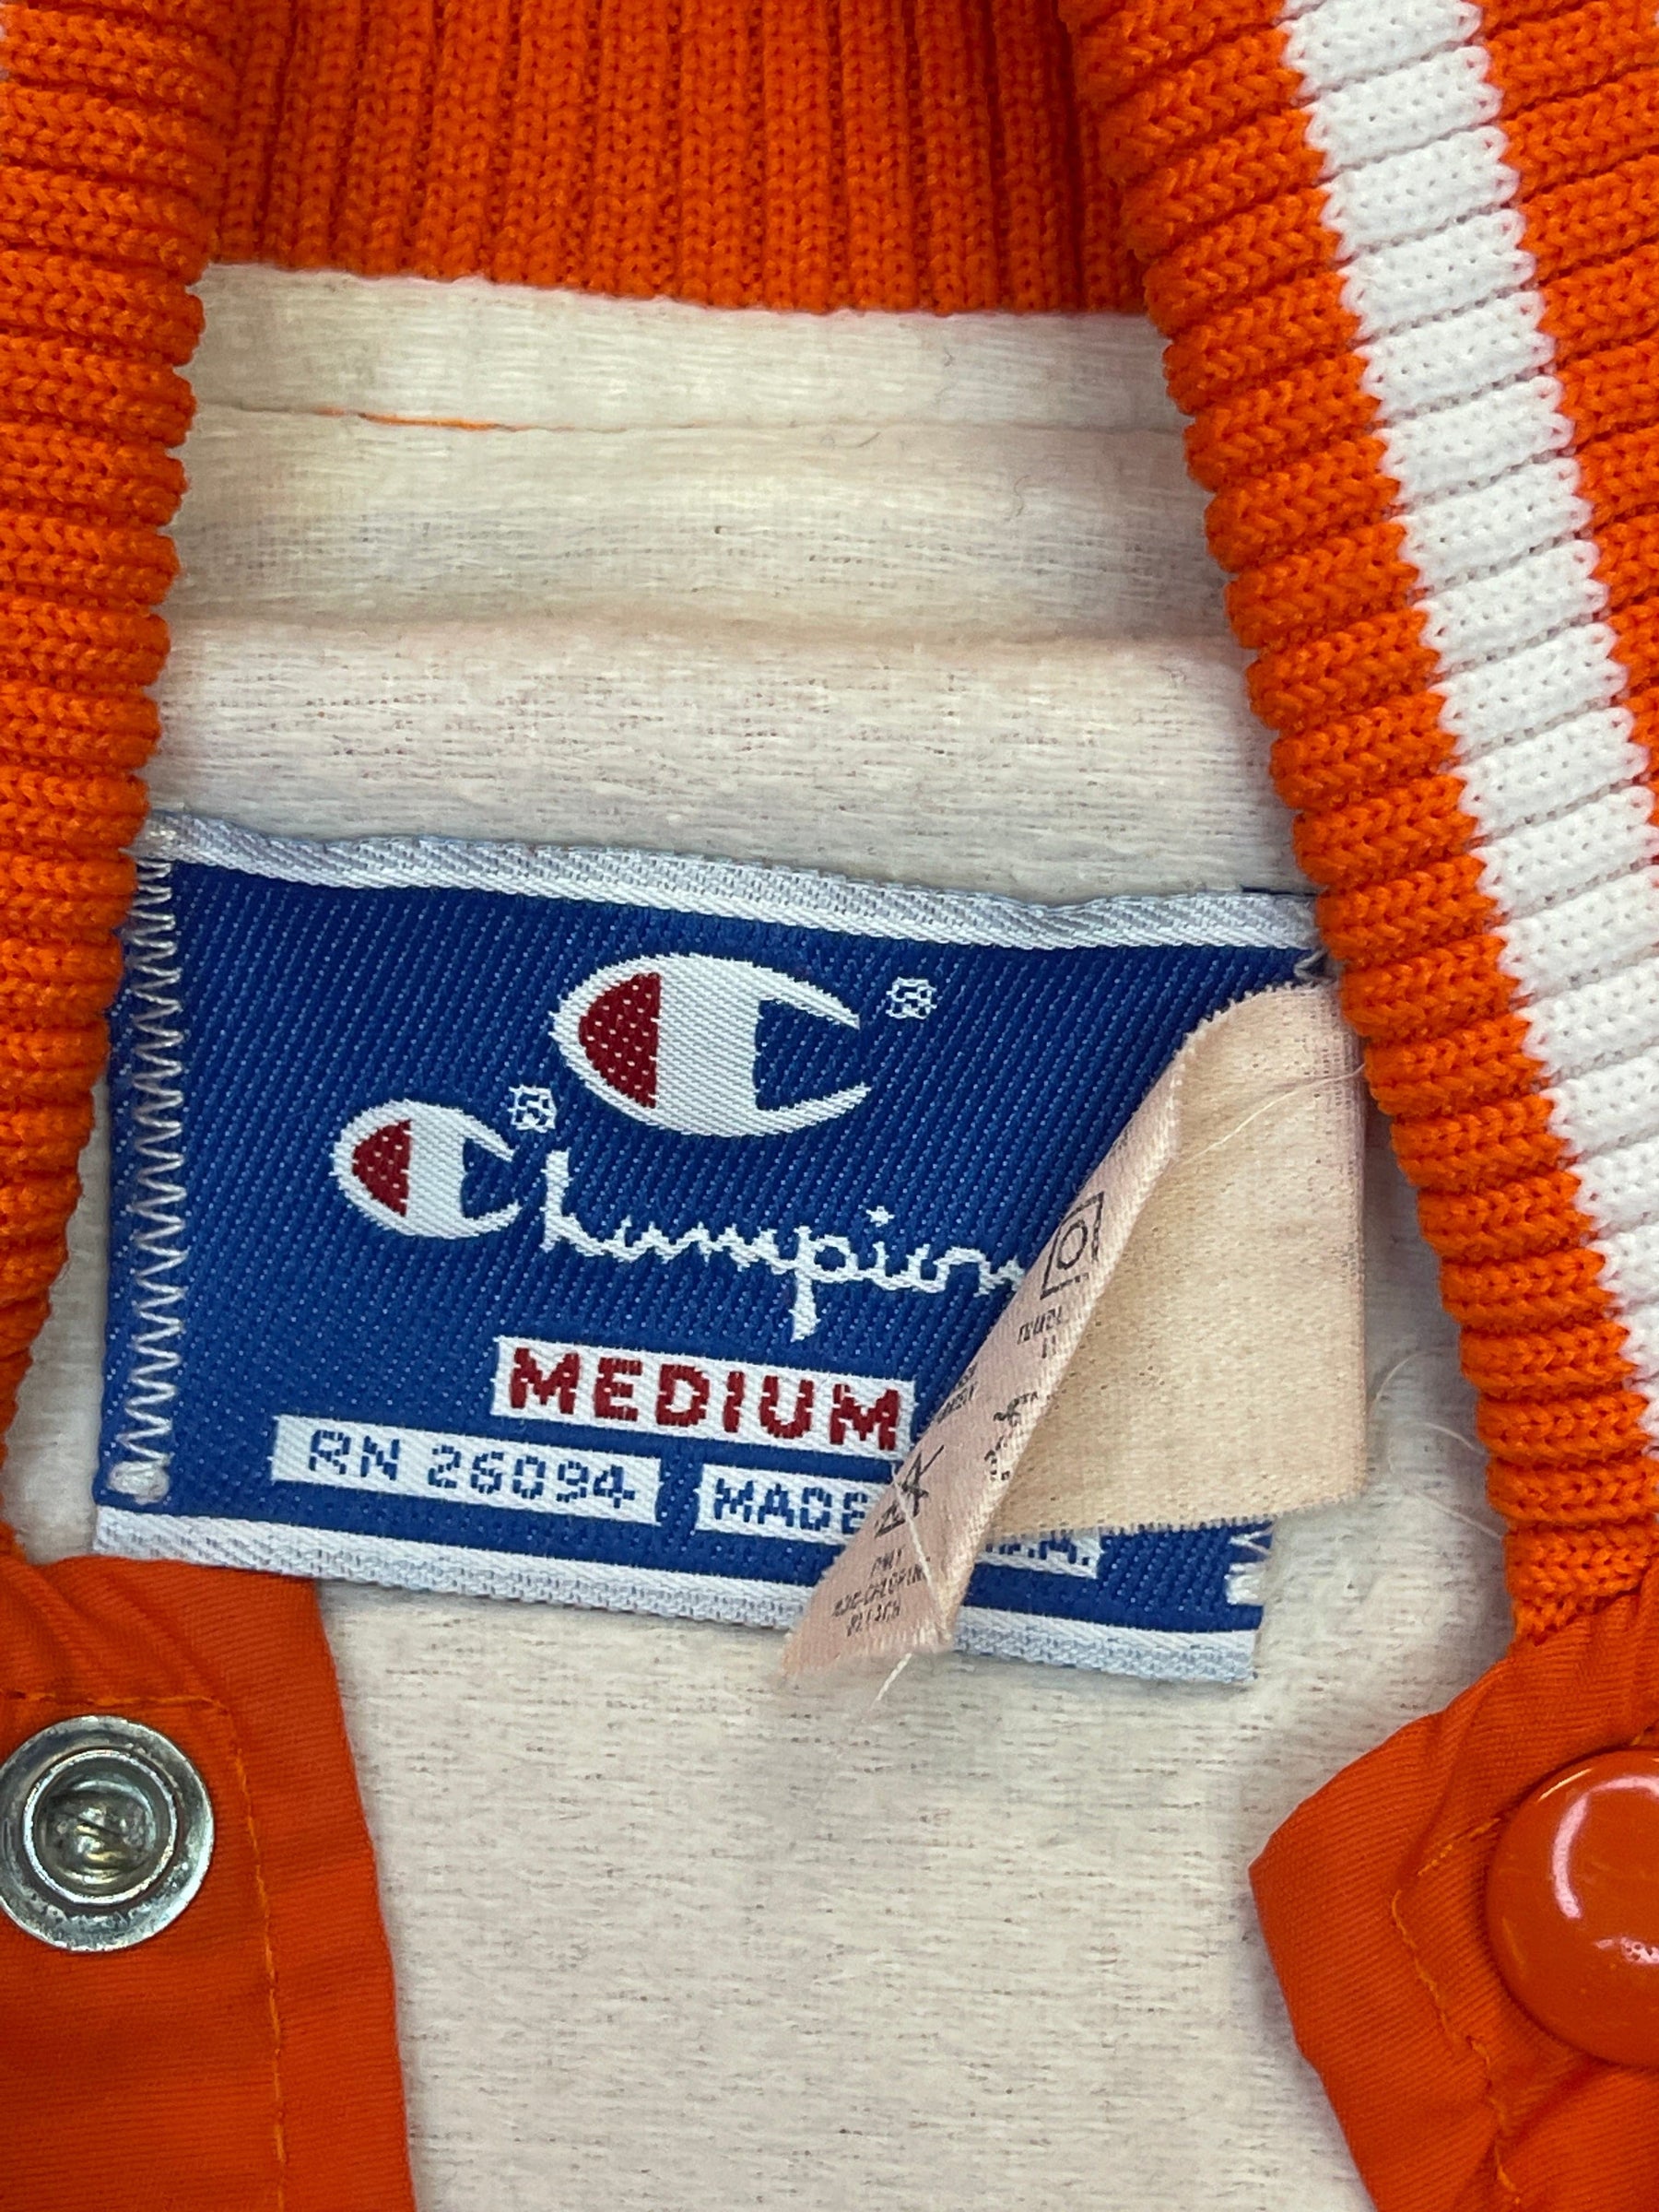 NFL Denver Broncos Champion Vintage Bright Orange Bomber Jacket  Men's Medium